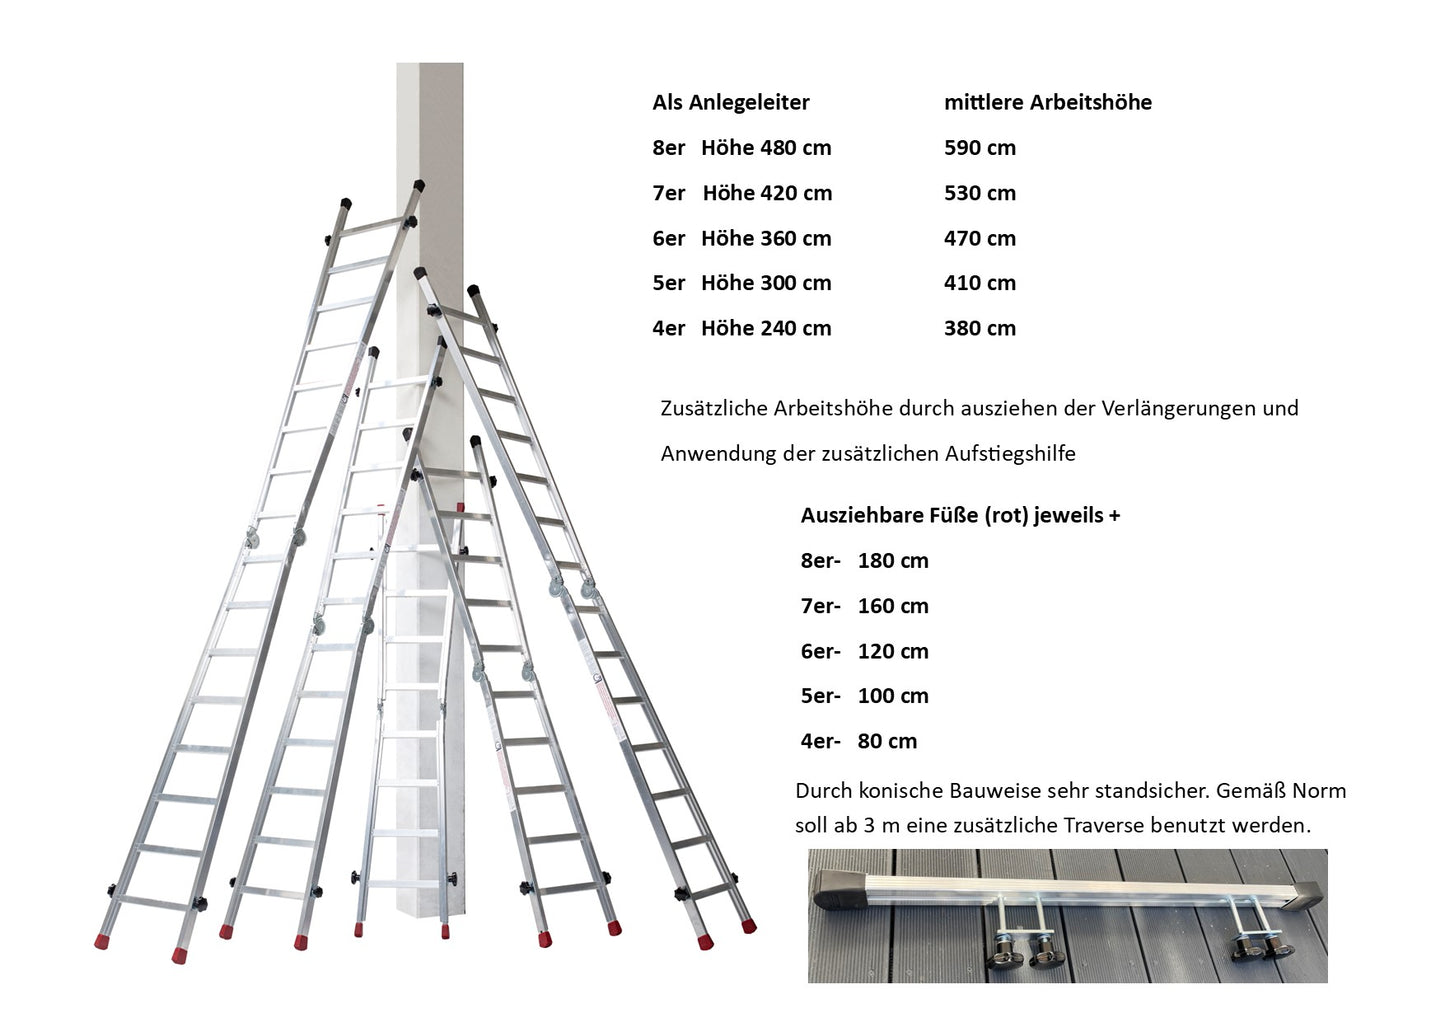 Gödde Treppenleiter 2 x 6 Stufen  (Anlegeleiter, Stehleiter, Treppenleiter)